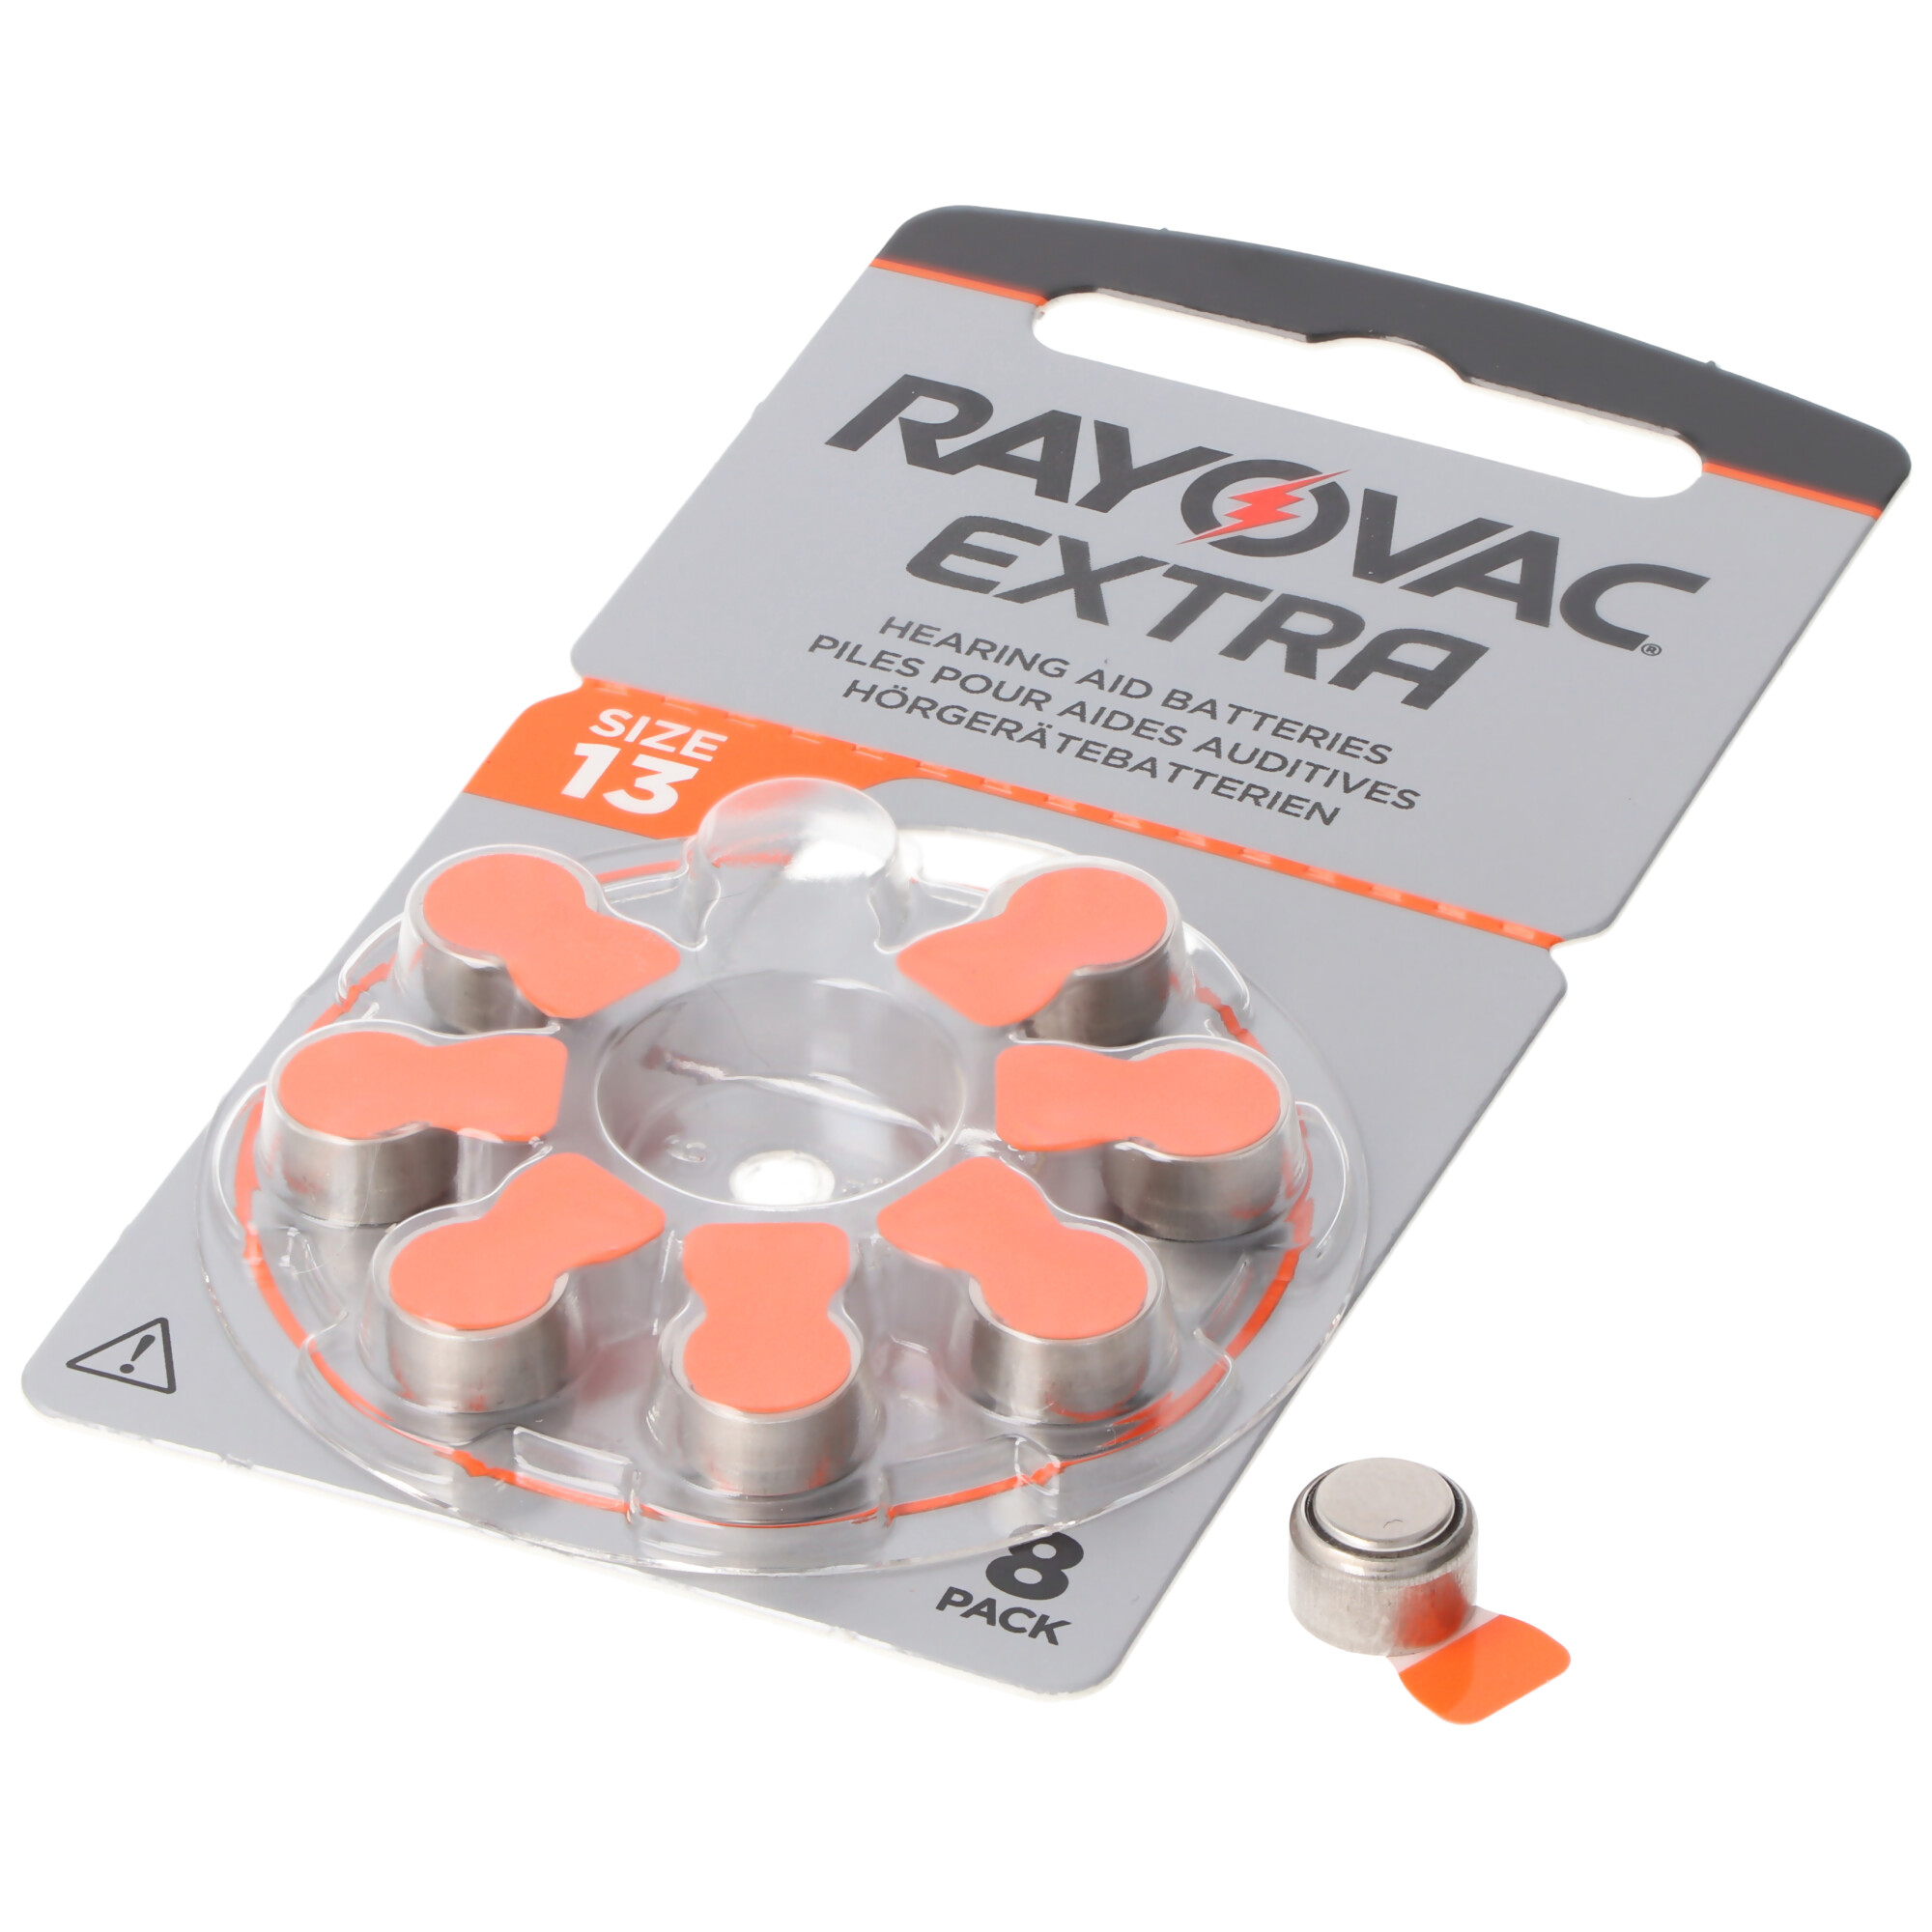 Rayovac HA13 PR48  Hörgeräte Batterien Extra Advanced 8er Sparpack 6 + 2 Gratis 5000252100973, Lieferung besteht aus 8 Stück Batterien